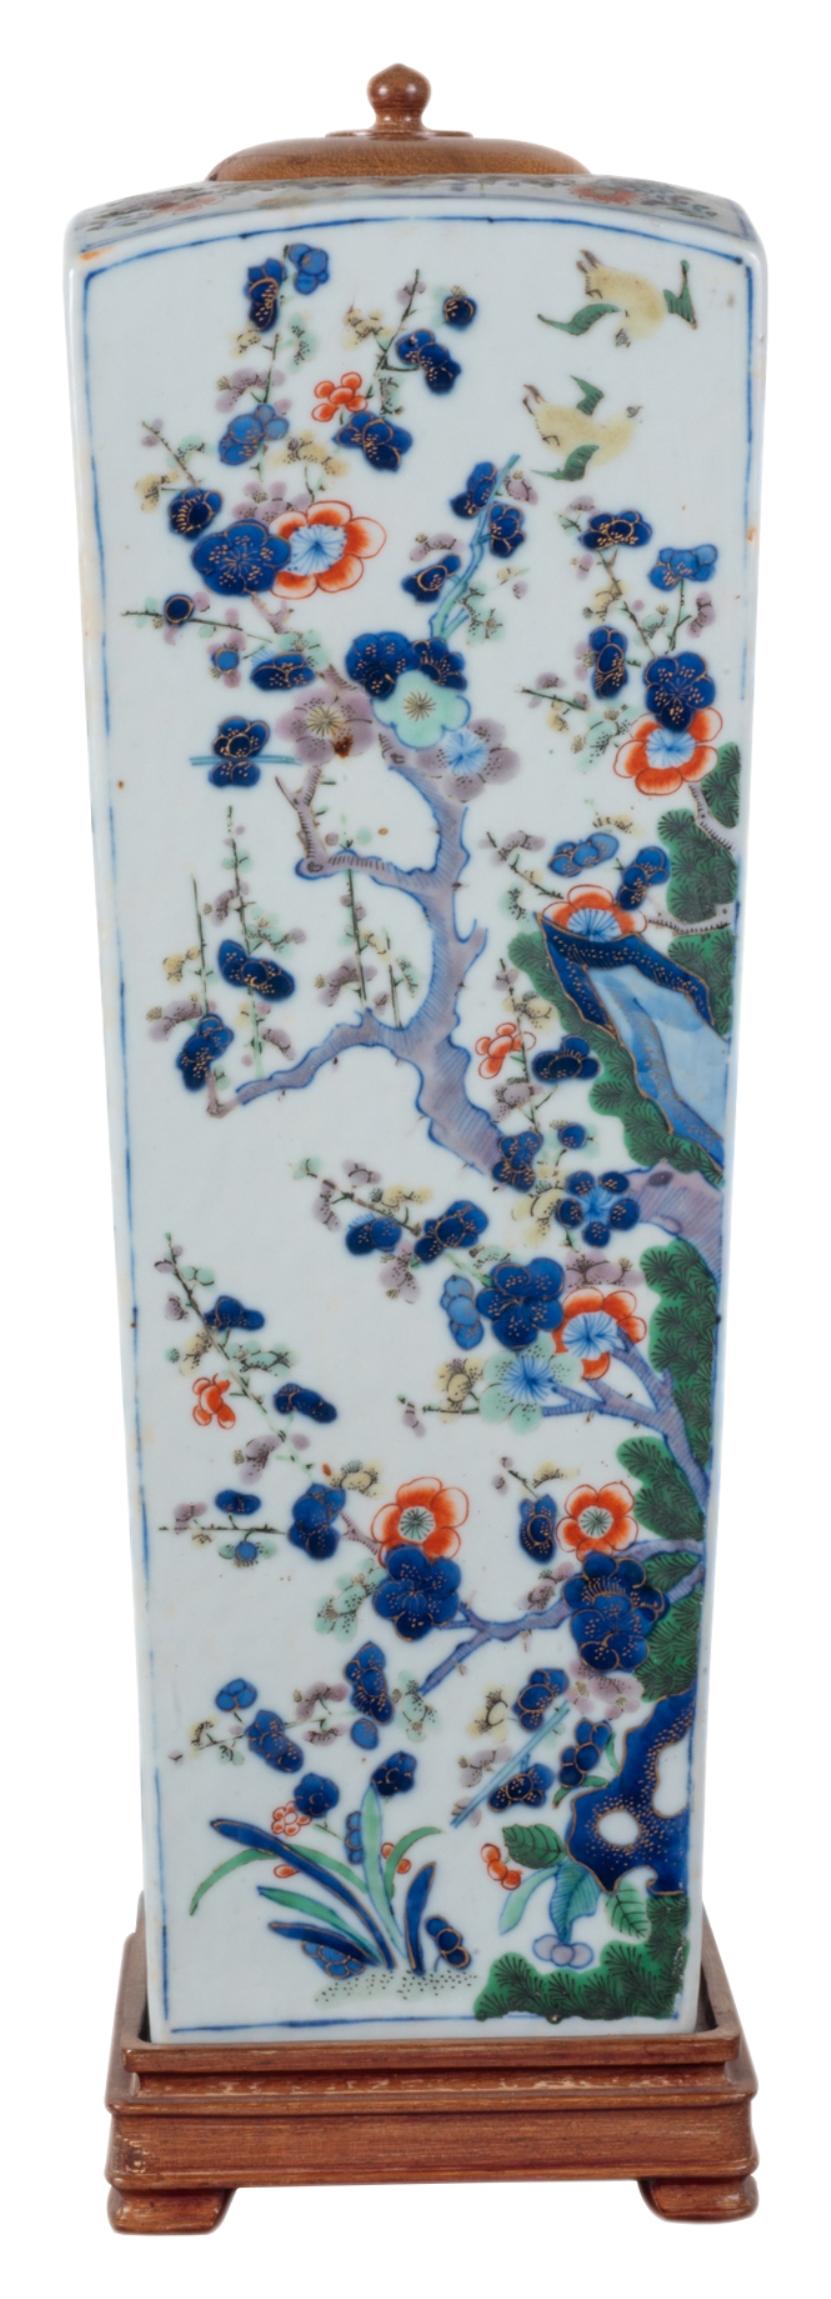 Un vase ou une lampe de forme carrée effilée de bonne qualité, datant du 19e siècle, de style chinois Famille Verte. Avec de magnifiques arbres classiques Prunus en fleurs et des fleurs exotiques, avec un couvercle et une base en bois.